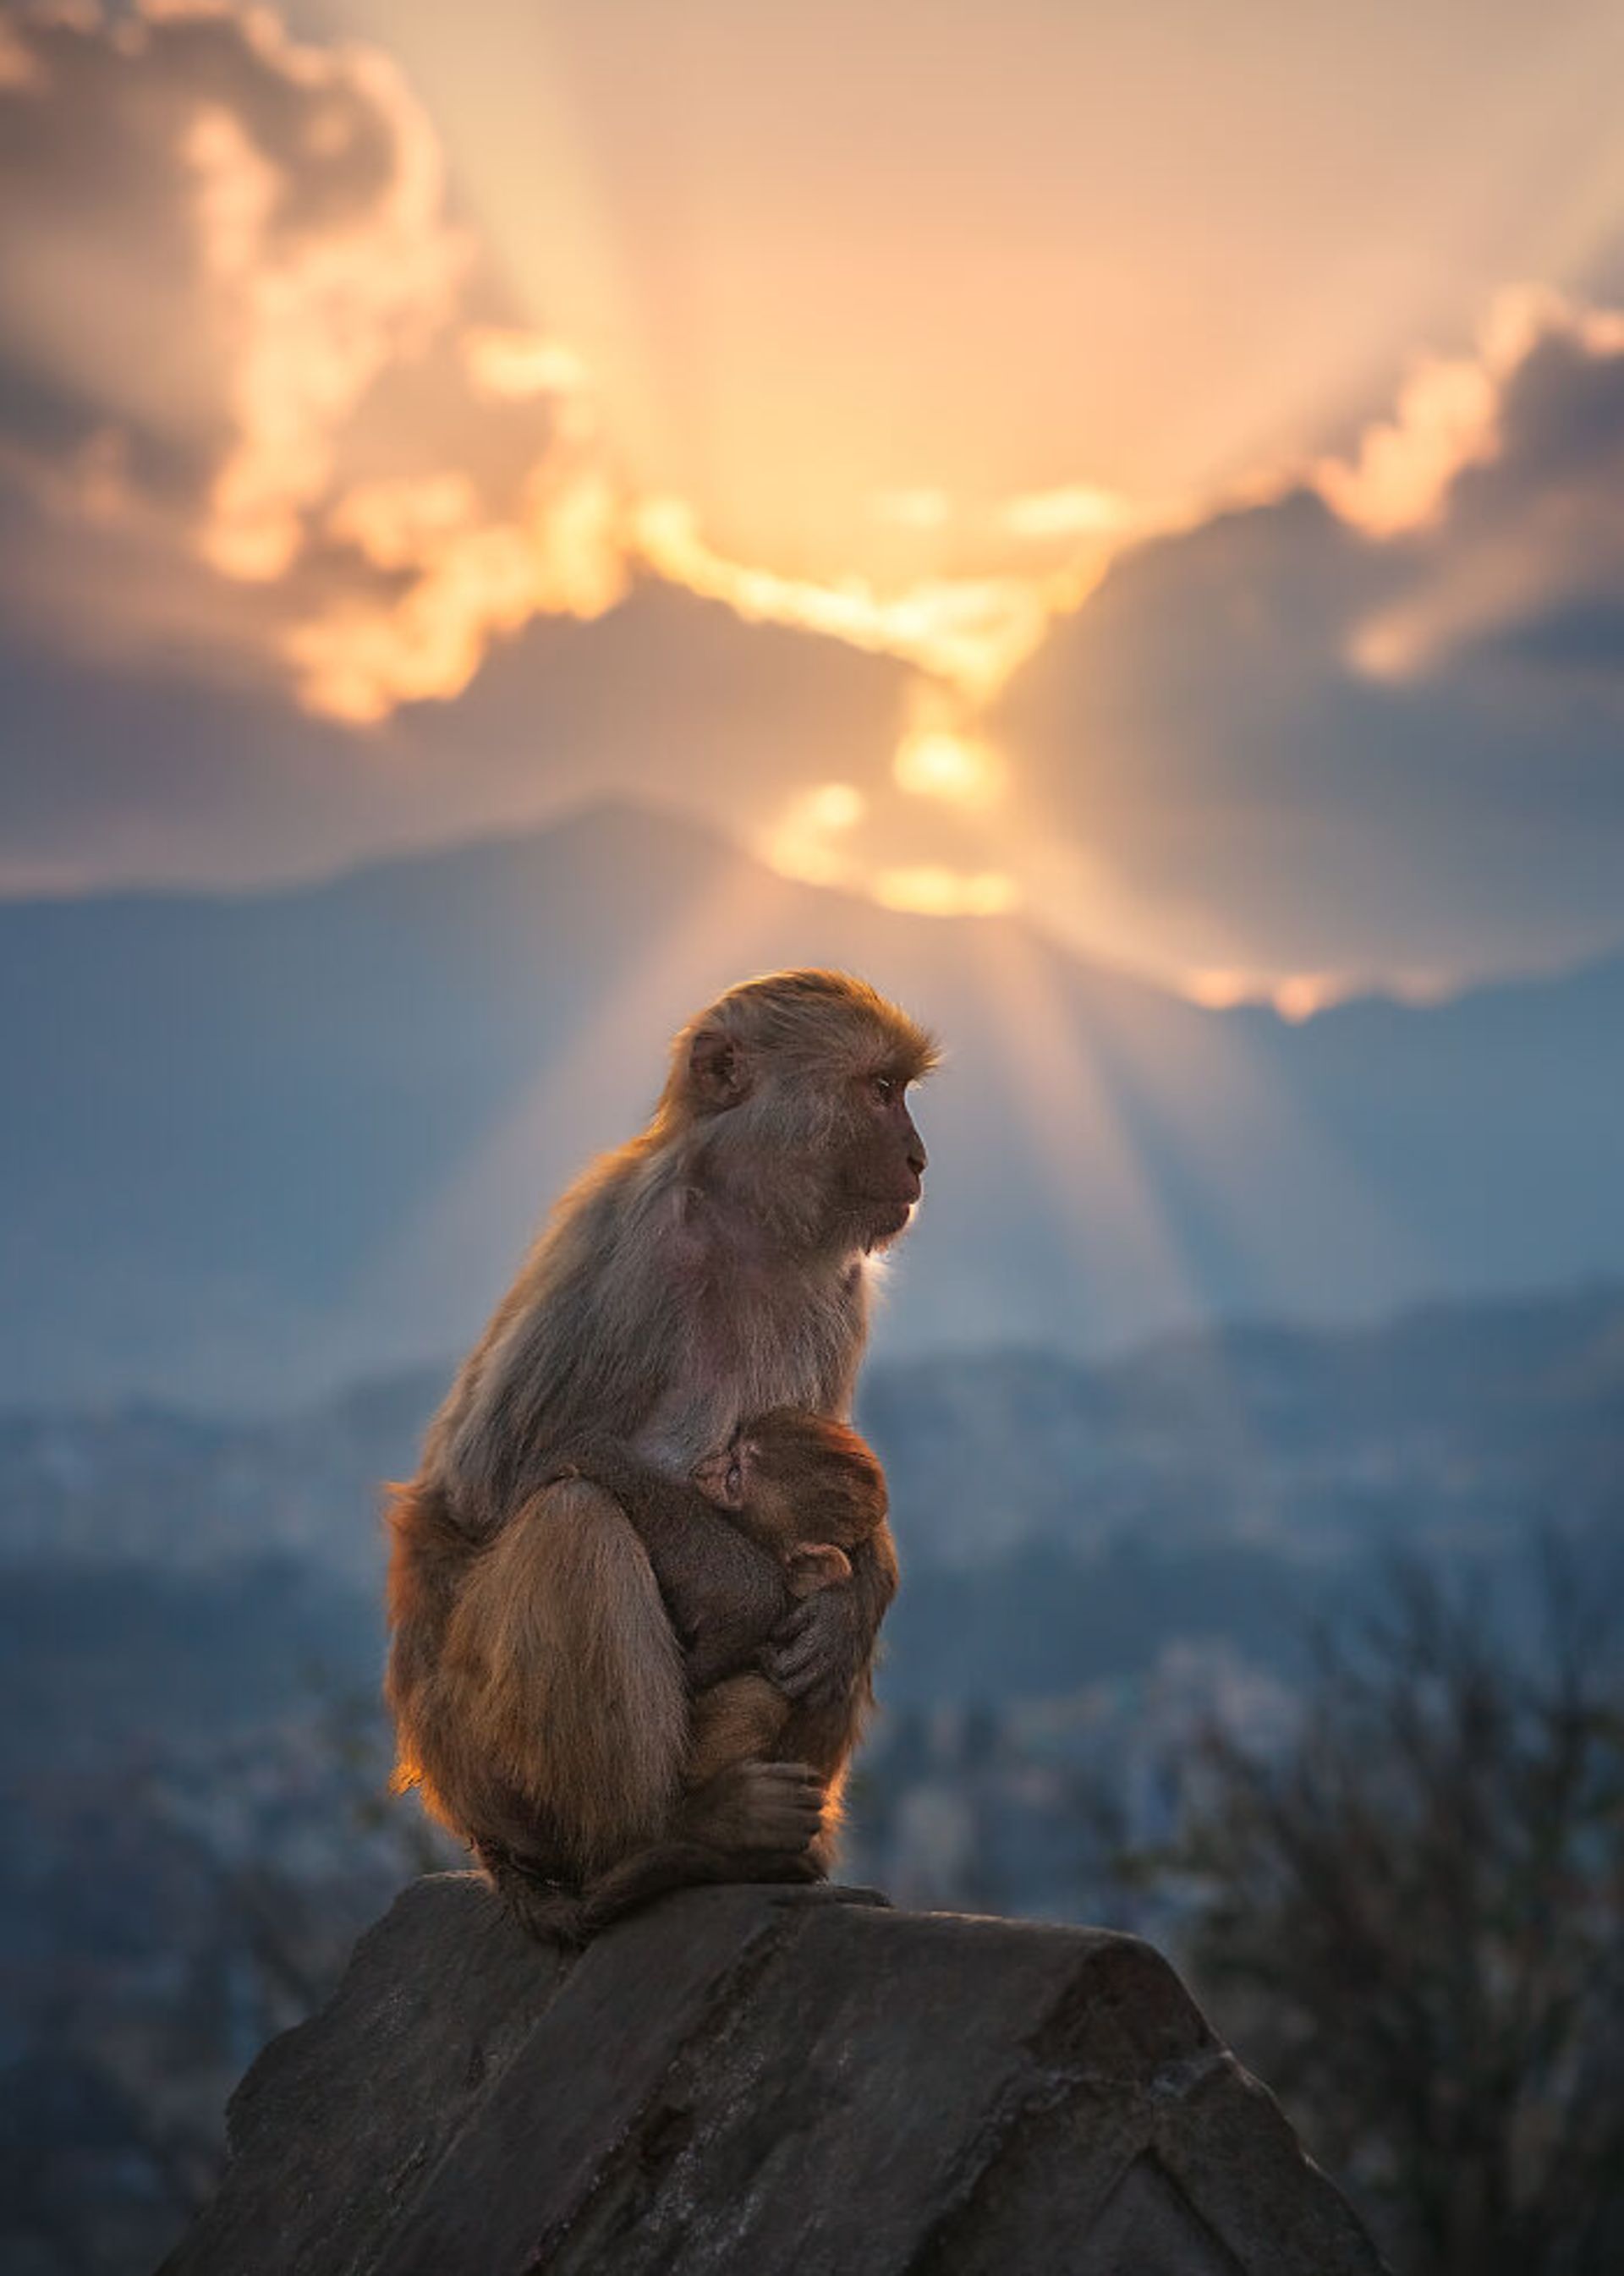 بچه میمون در آغوش مادر روی صخره غروب